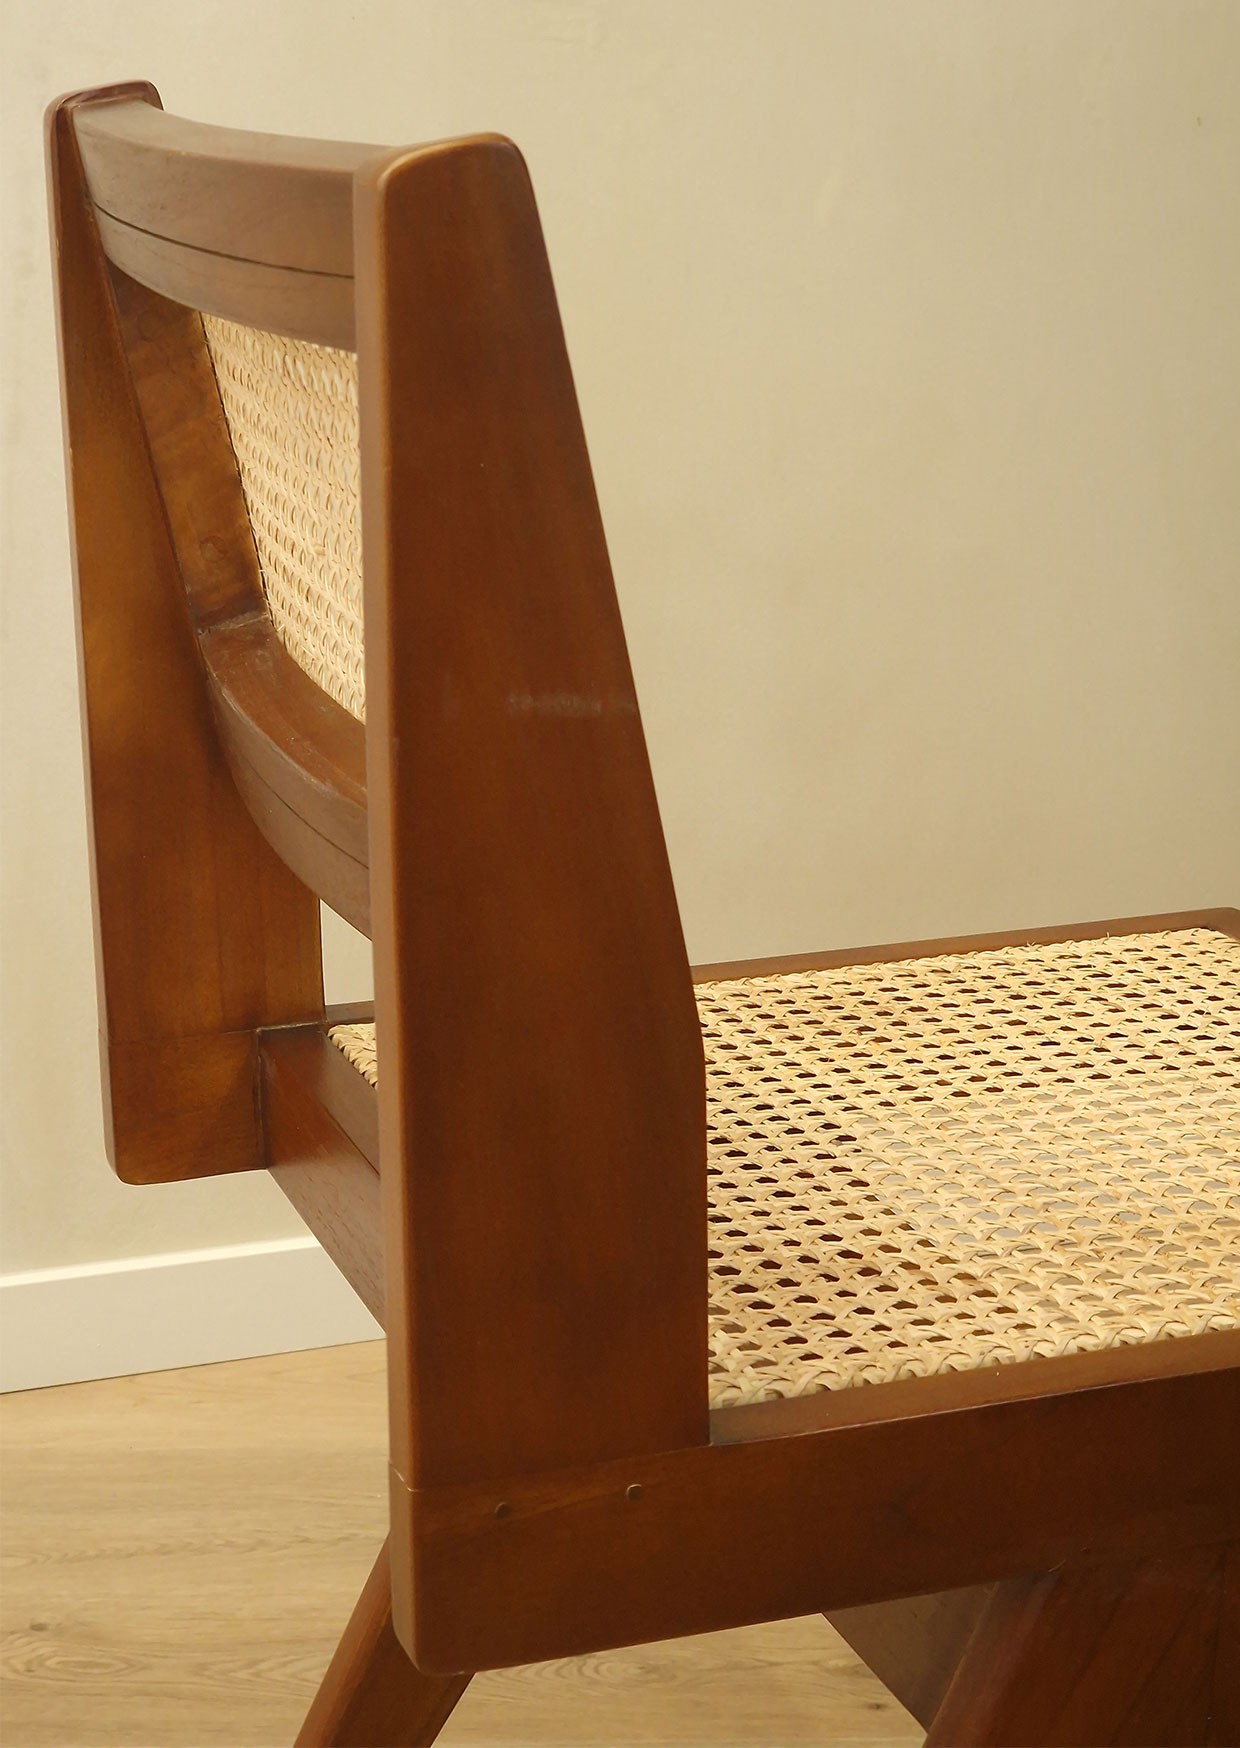 Project Evolution-Interieurwinkel-Design meubelen-Totaalprojecten-Totaalinrichting-Meubelwinkel-Hasselt Limburg-Design stoelen-Krukken